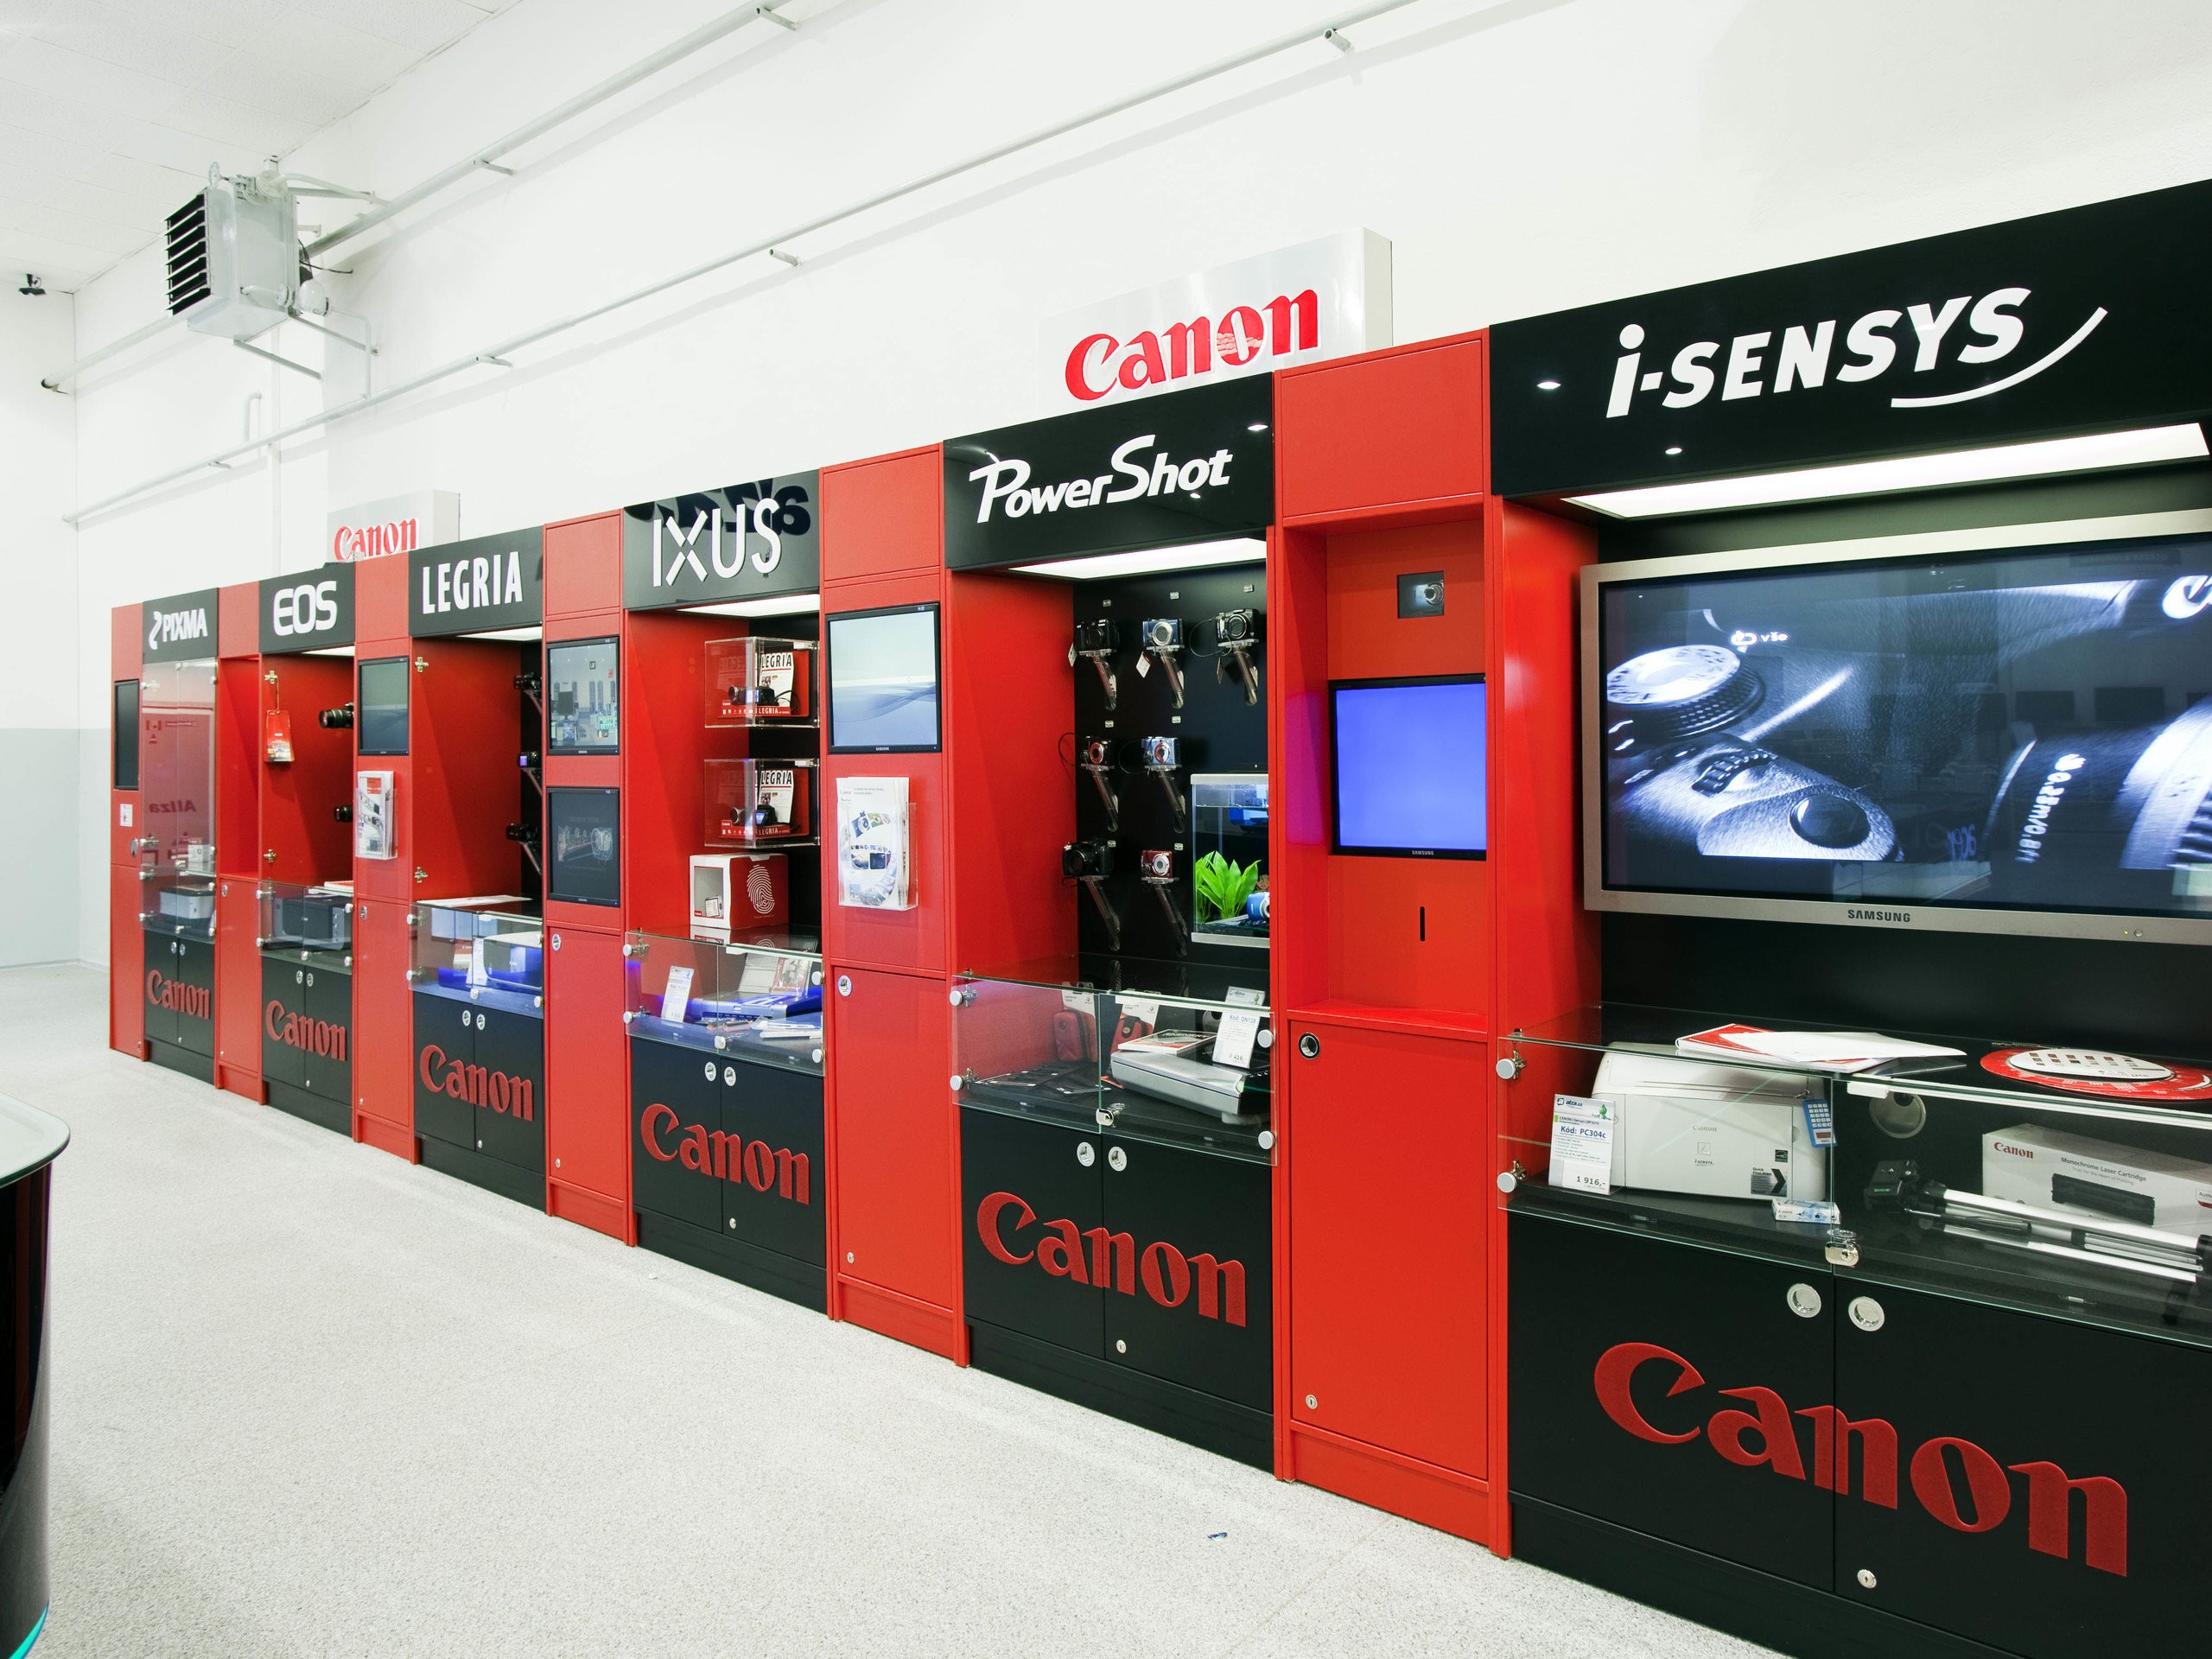 Design a výroba prodejního stojanu pro značku Canon